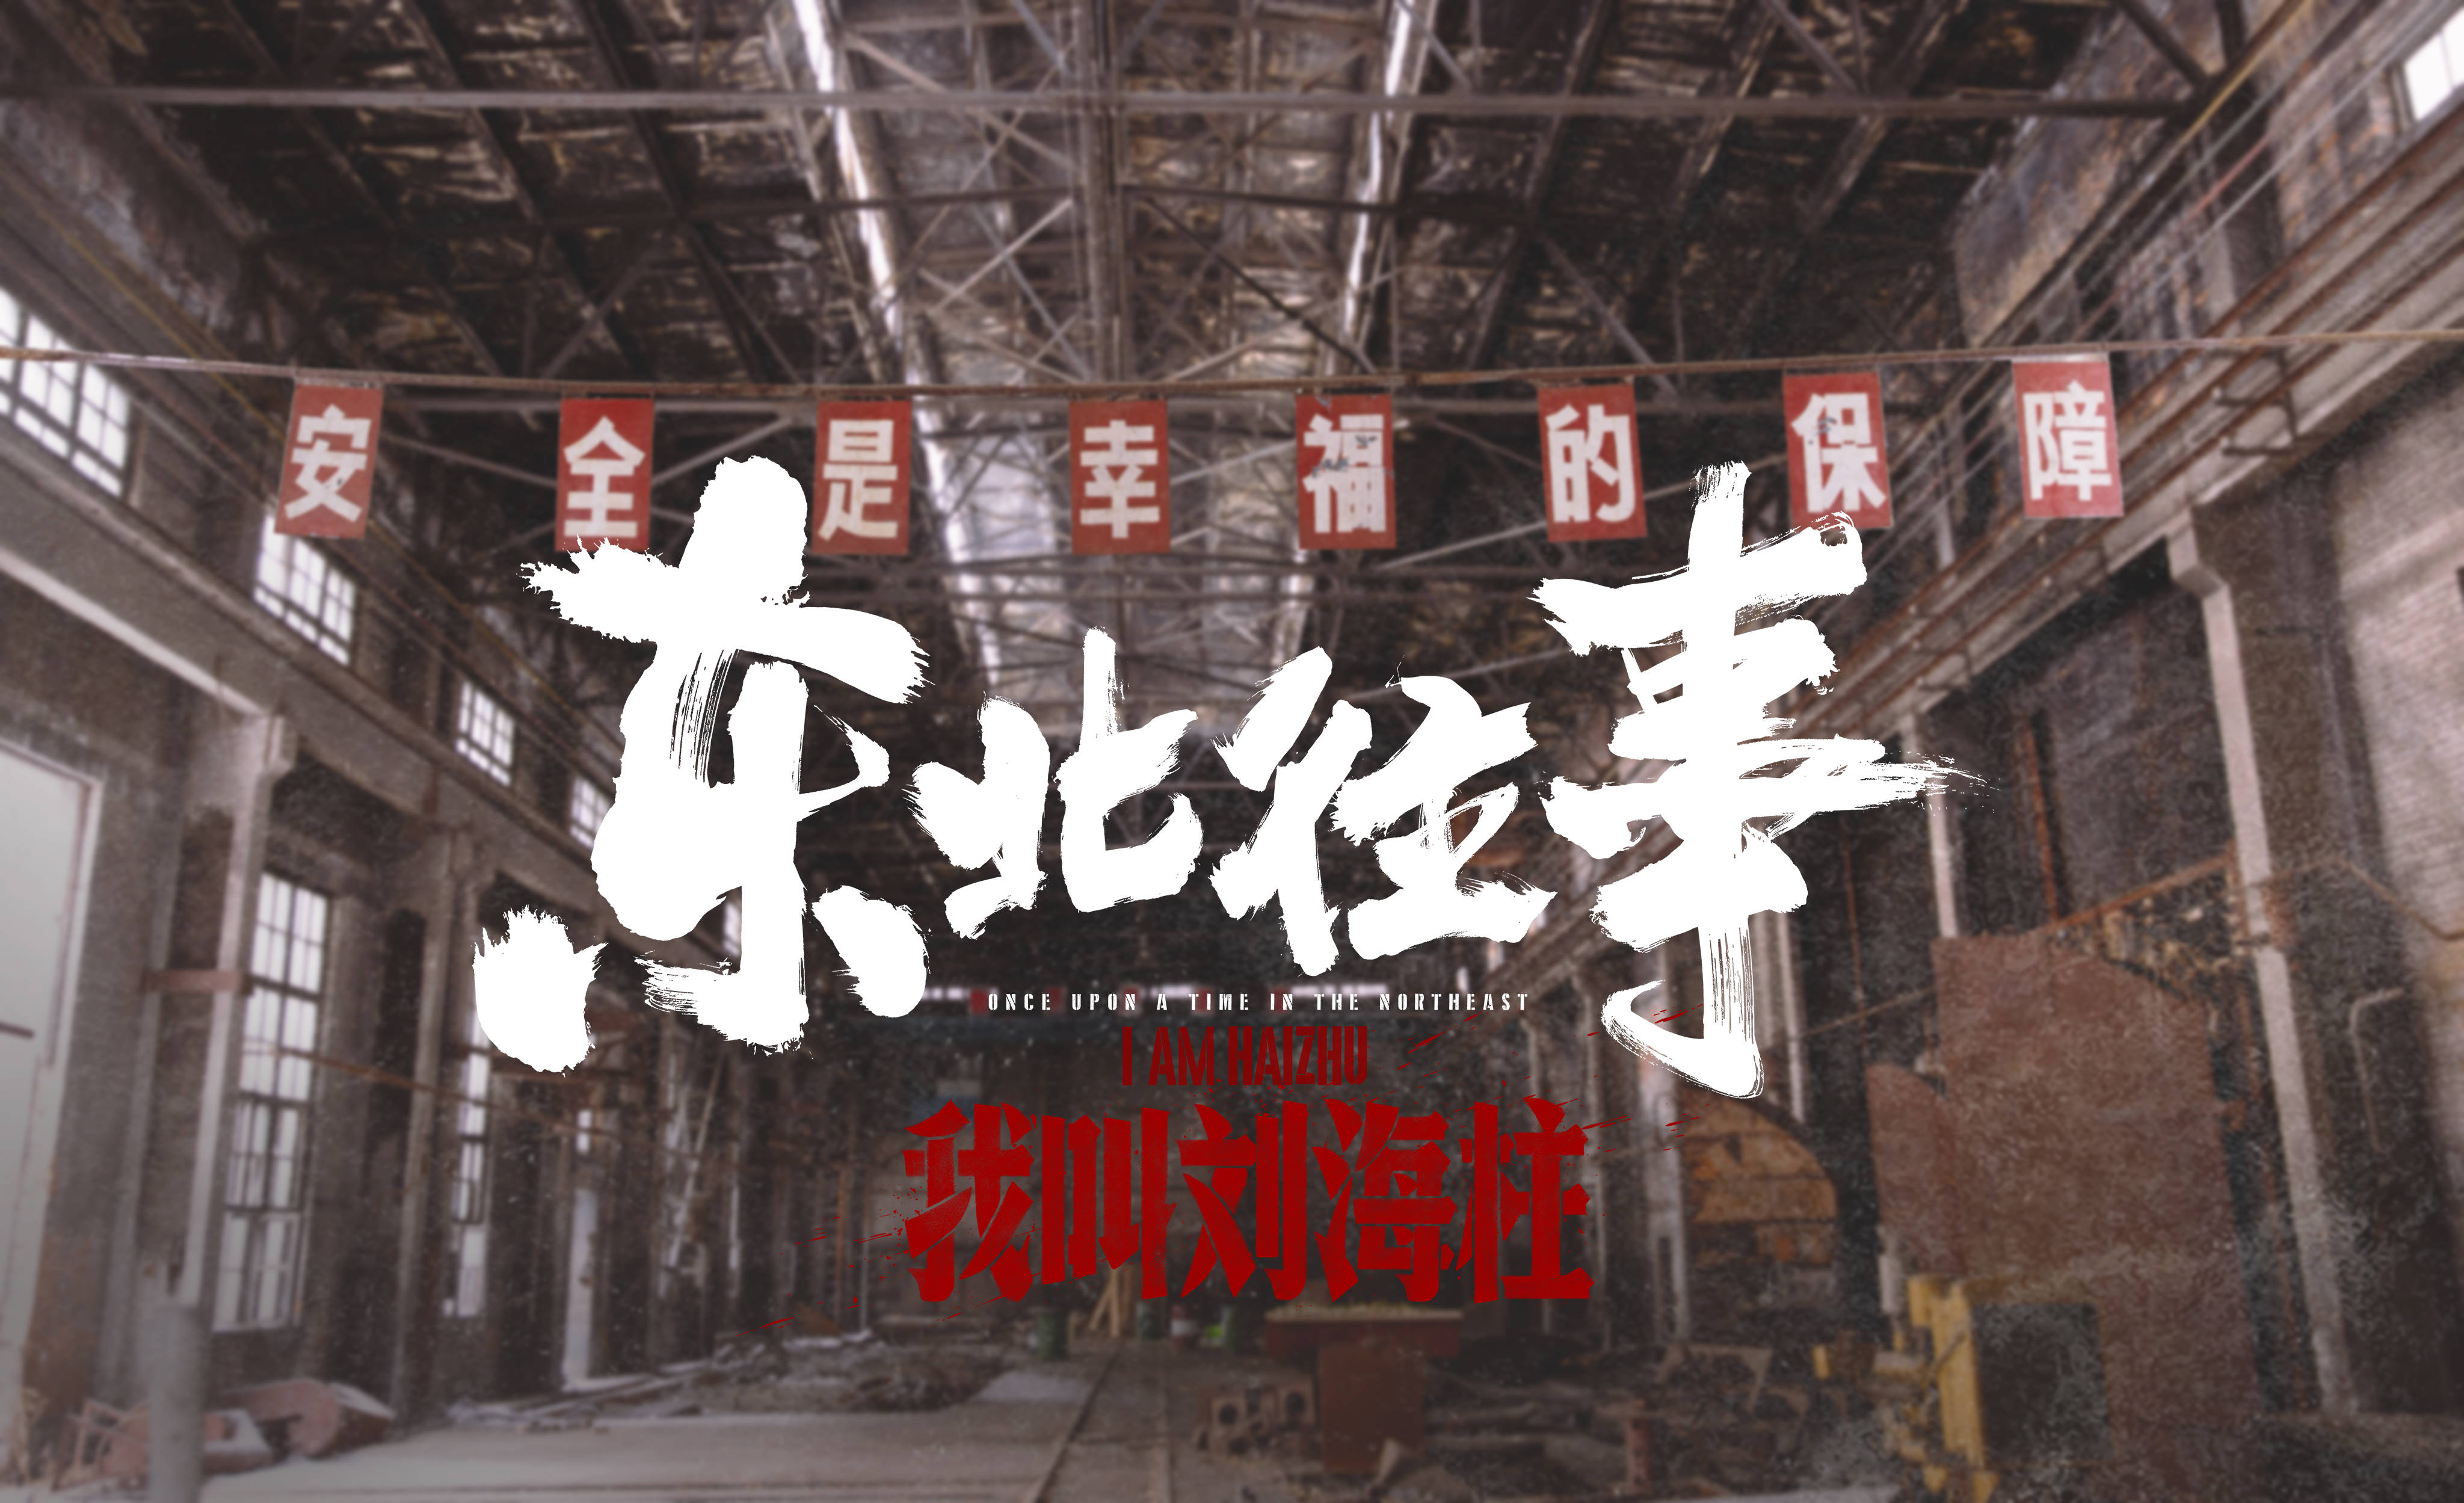 由淘梦出品的东北题材网络电影《东北往事:我叫刘海柱》9月3日正式于